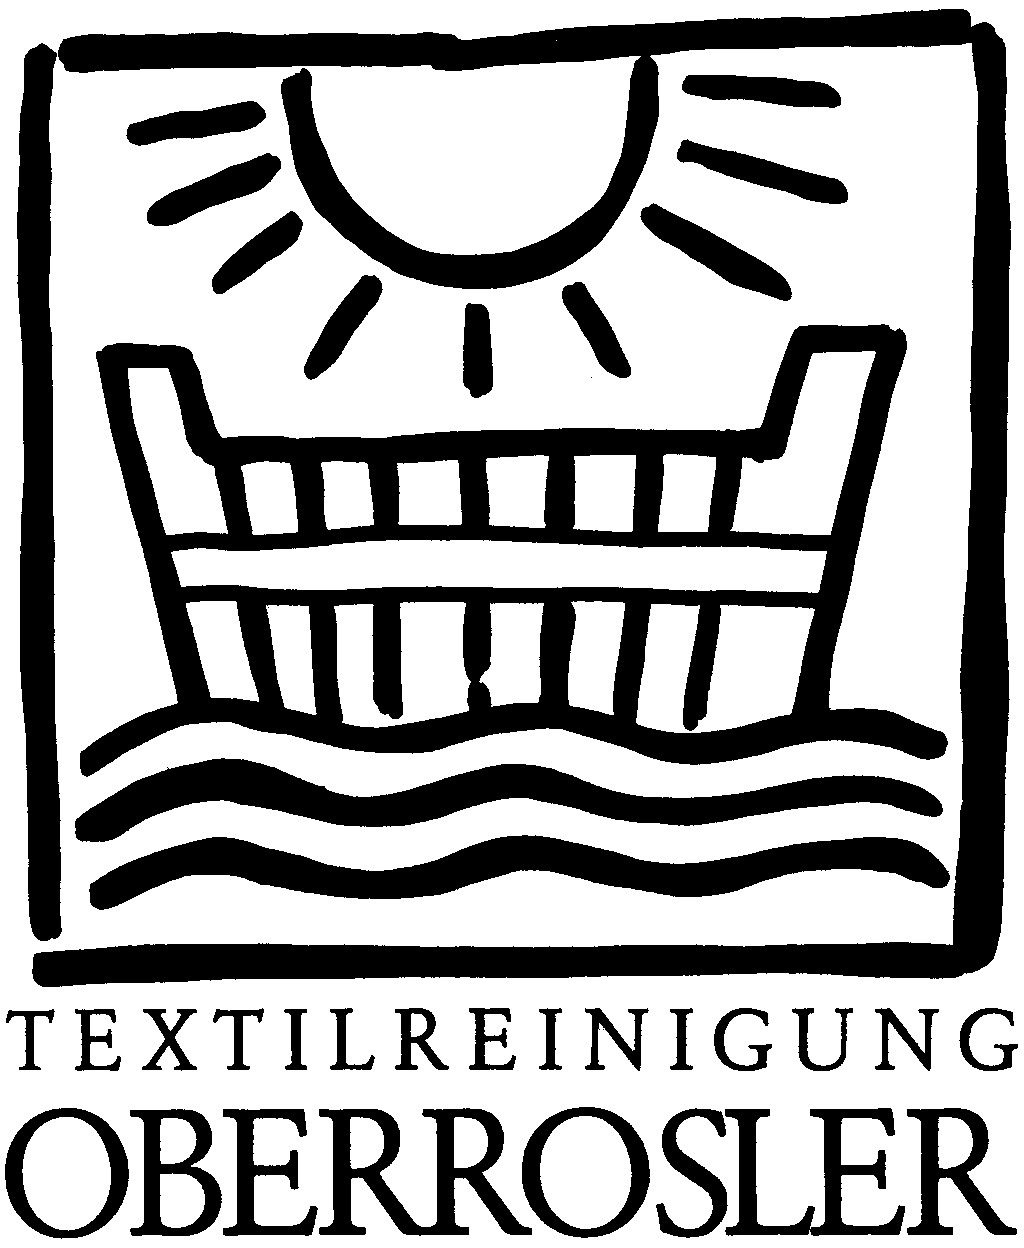 (c) Textilreinigung-oberrosler.at